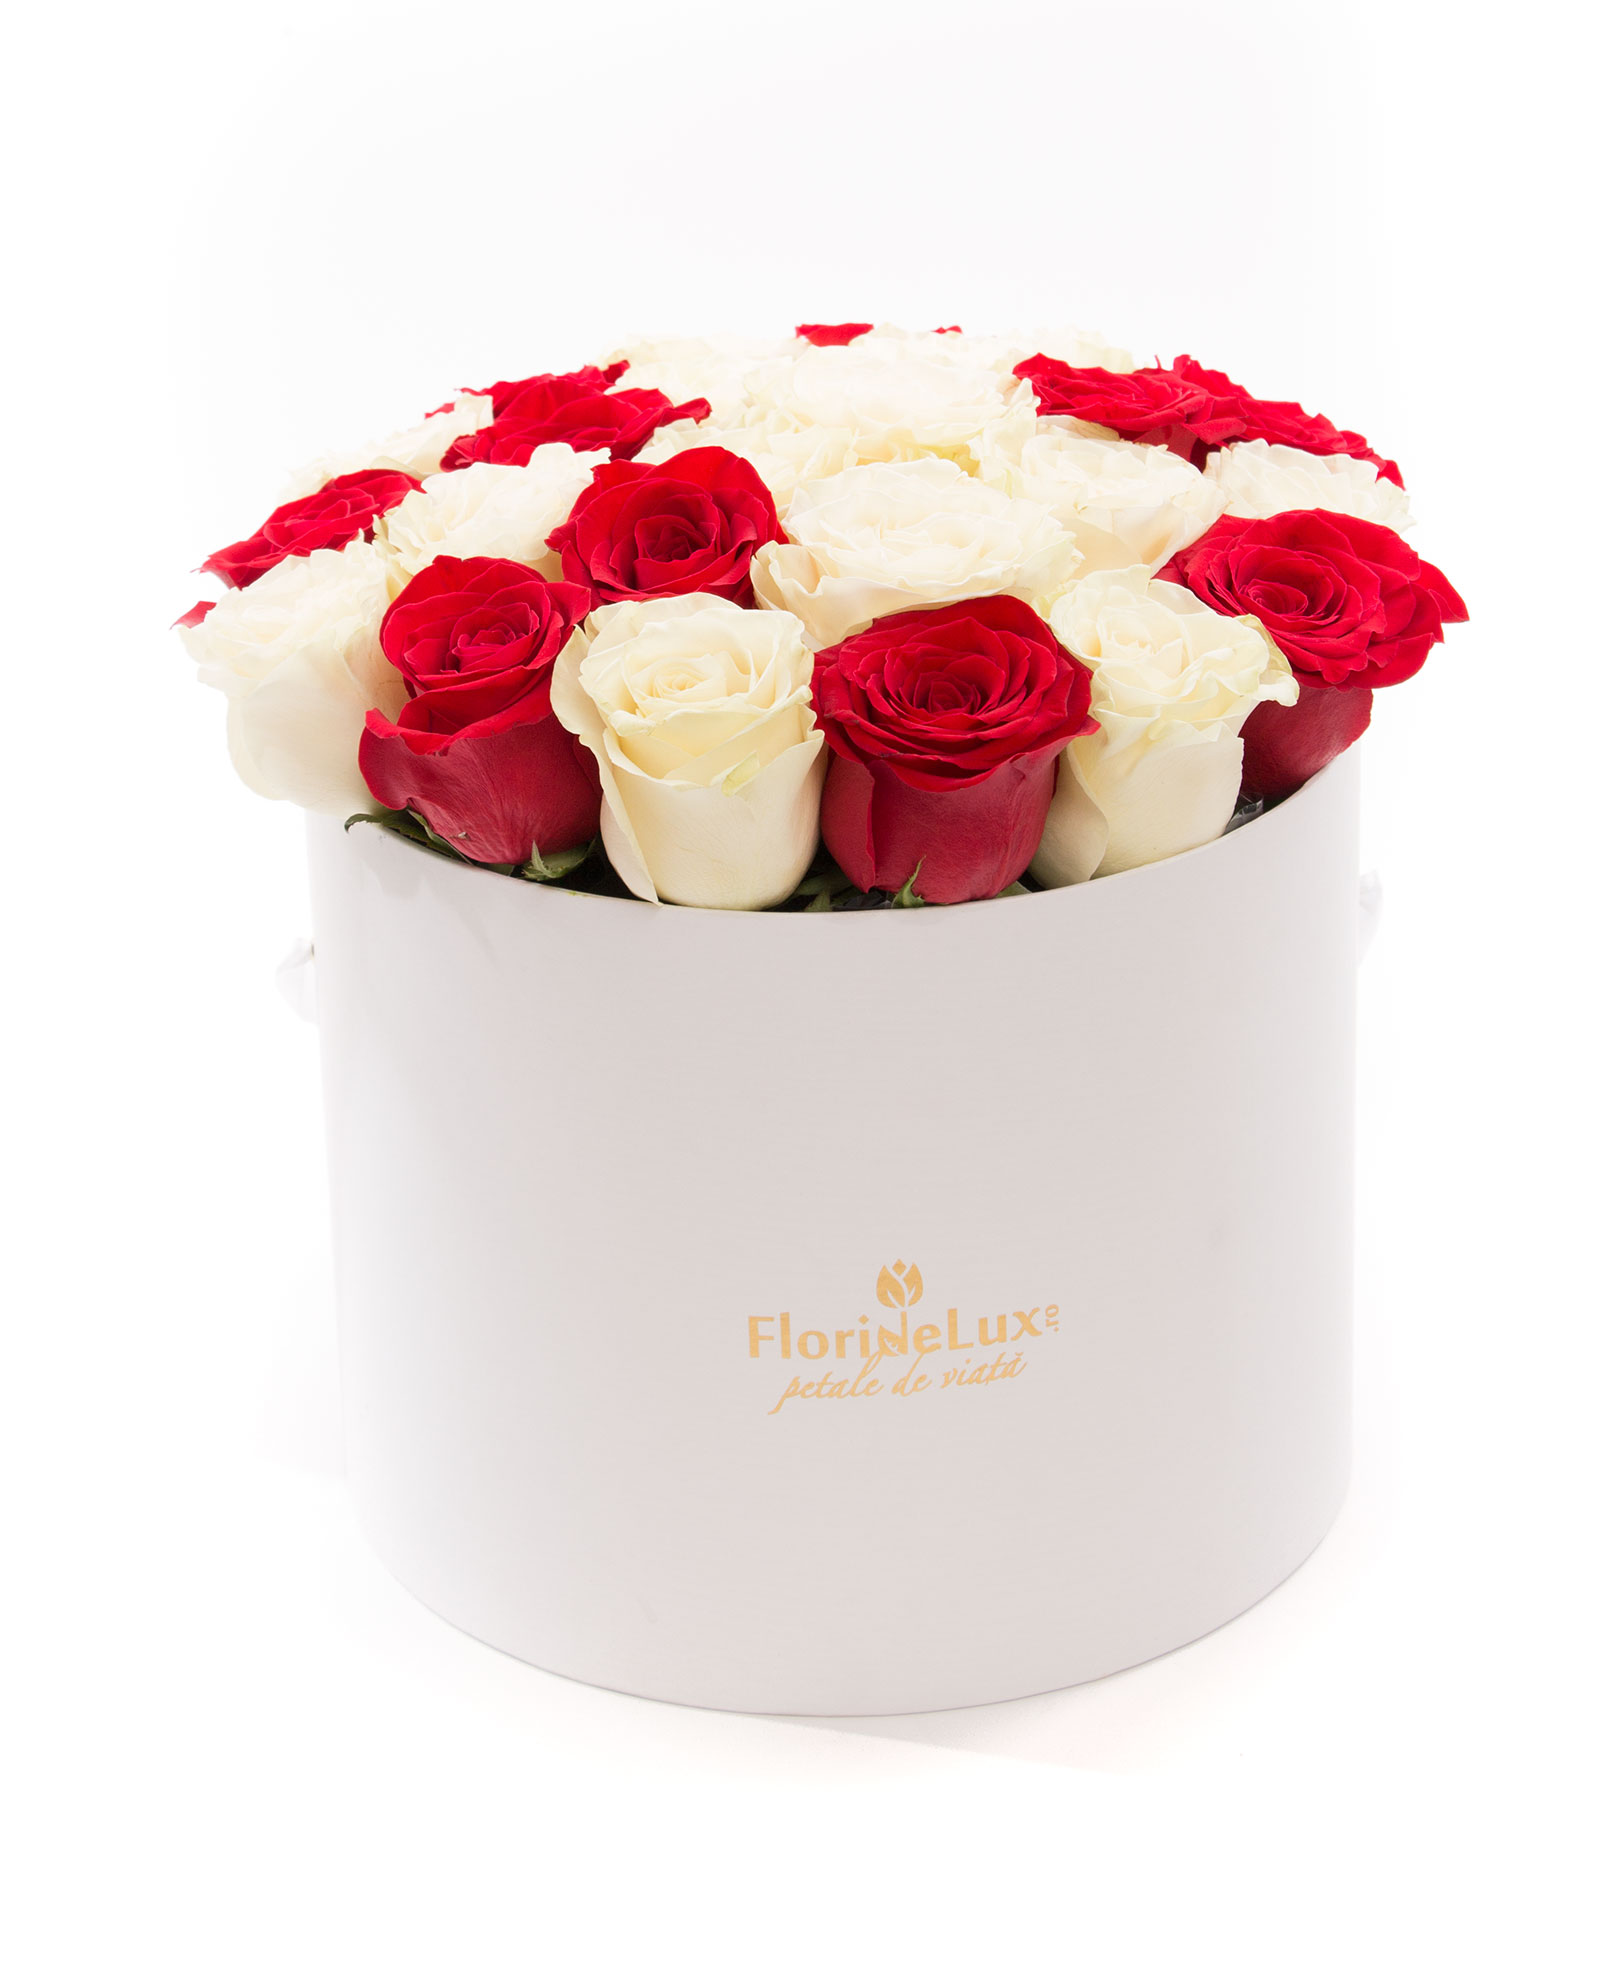 Cutie cu 23 trandafiri albi, rosii si Chimney Rock